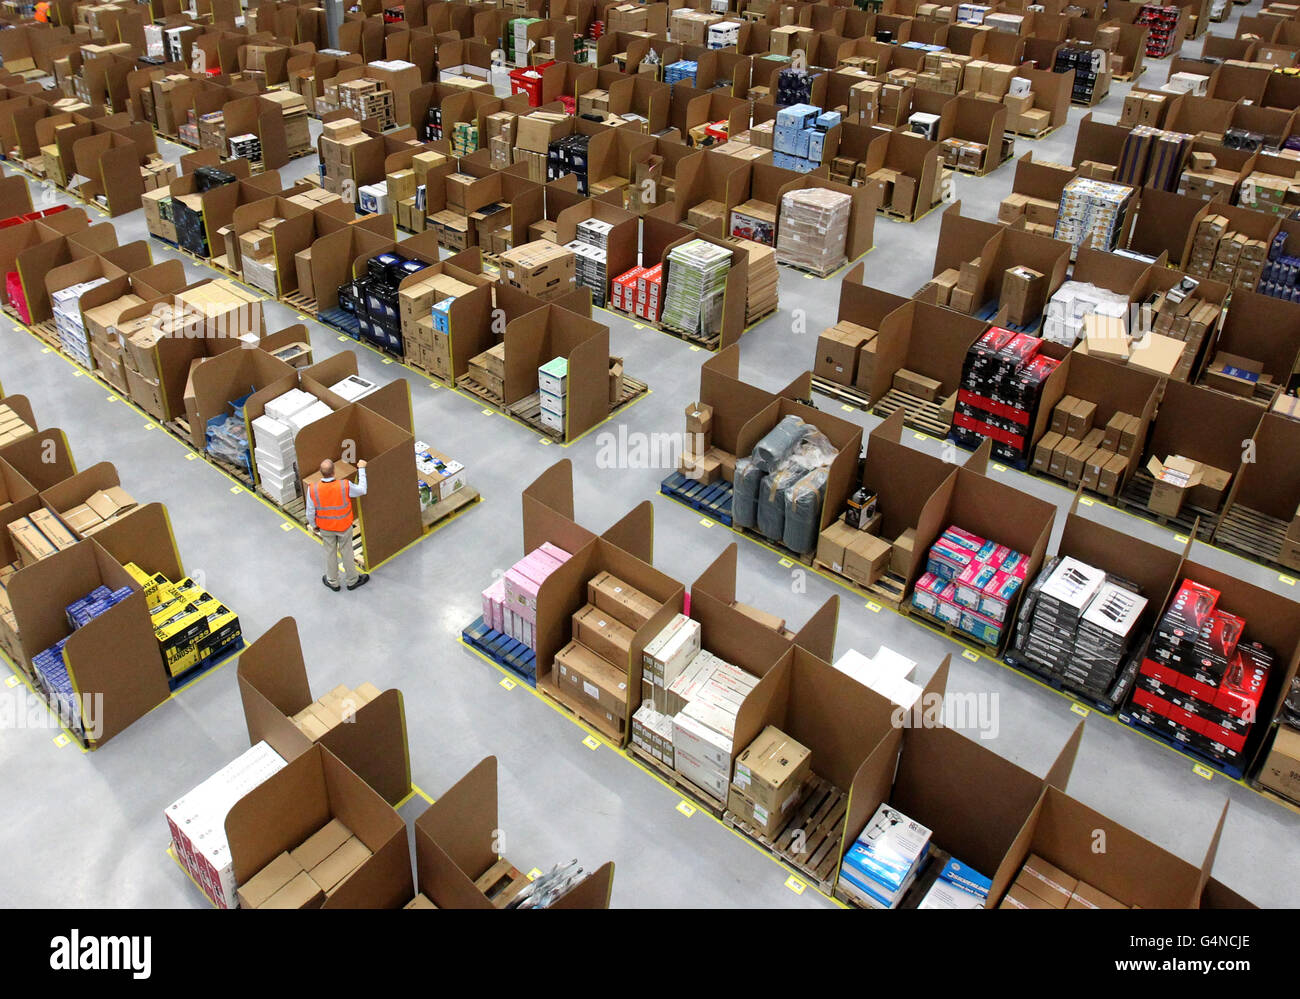 Gesamtansicht des Amazon UK neues, eine Million Quadratmeter großes  Versandzentrum in Fife Stockfotografie - Alamy